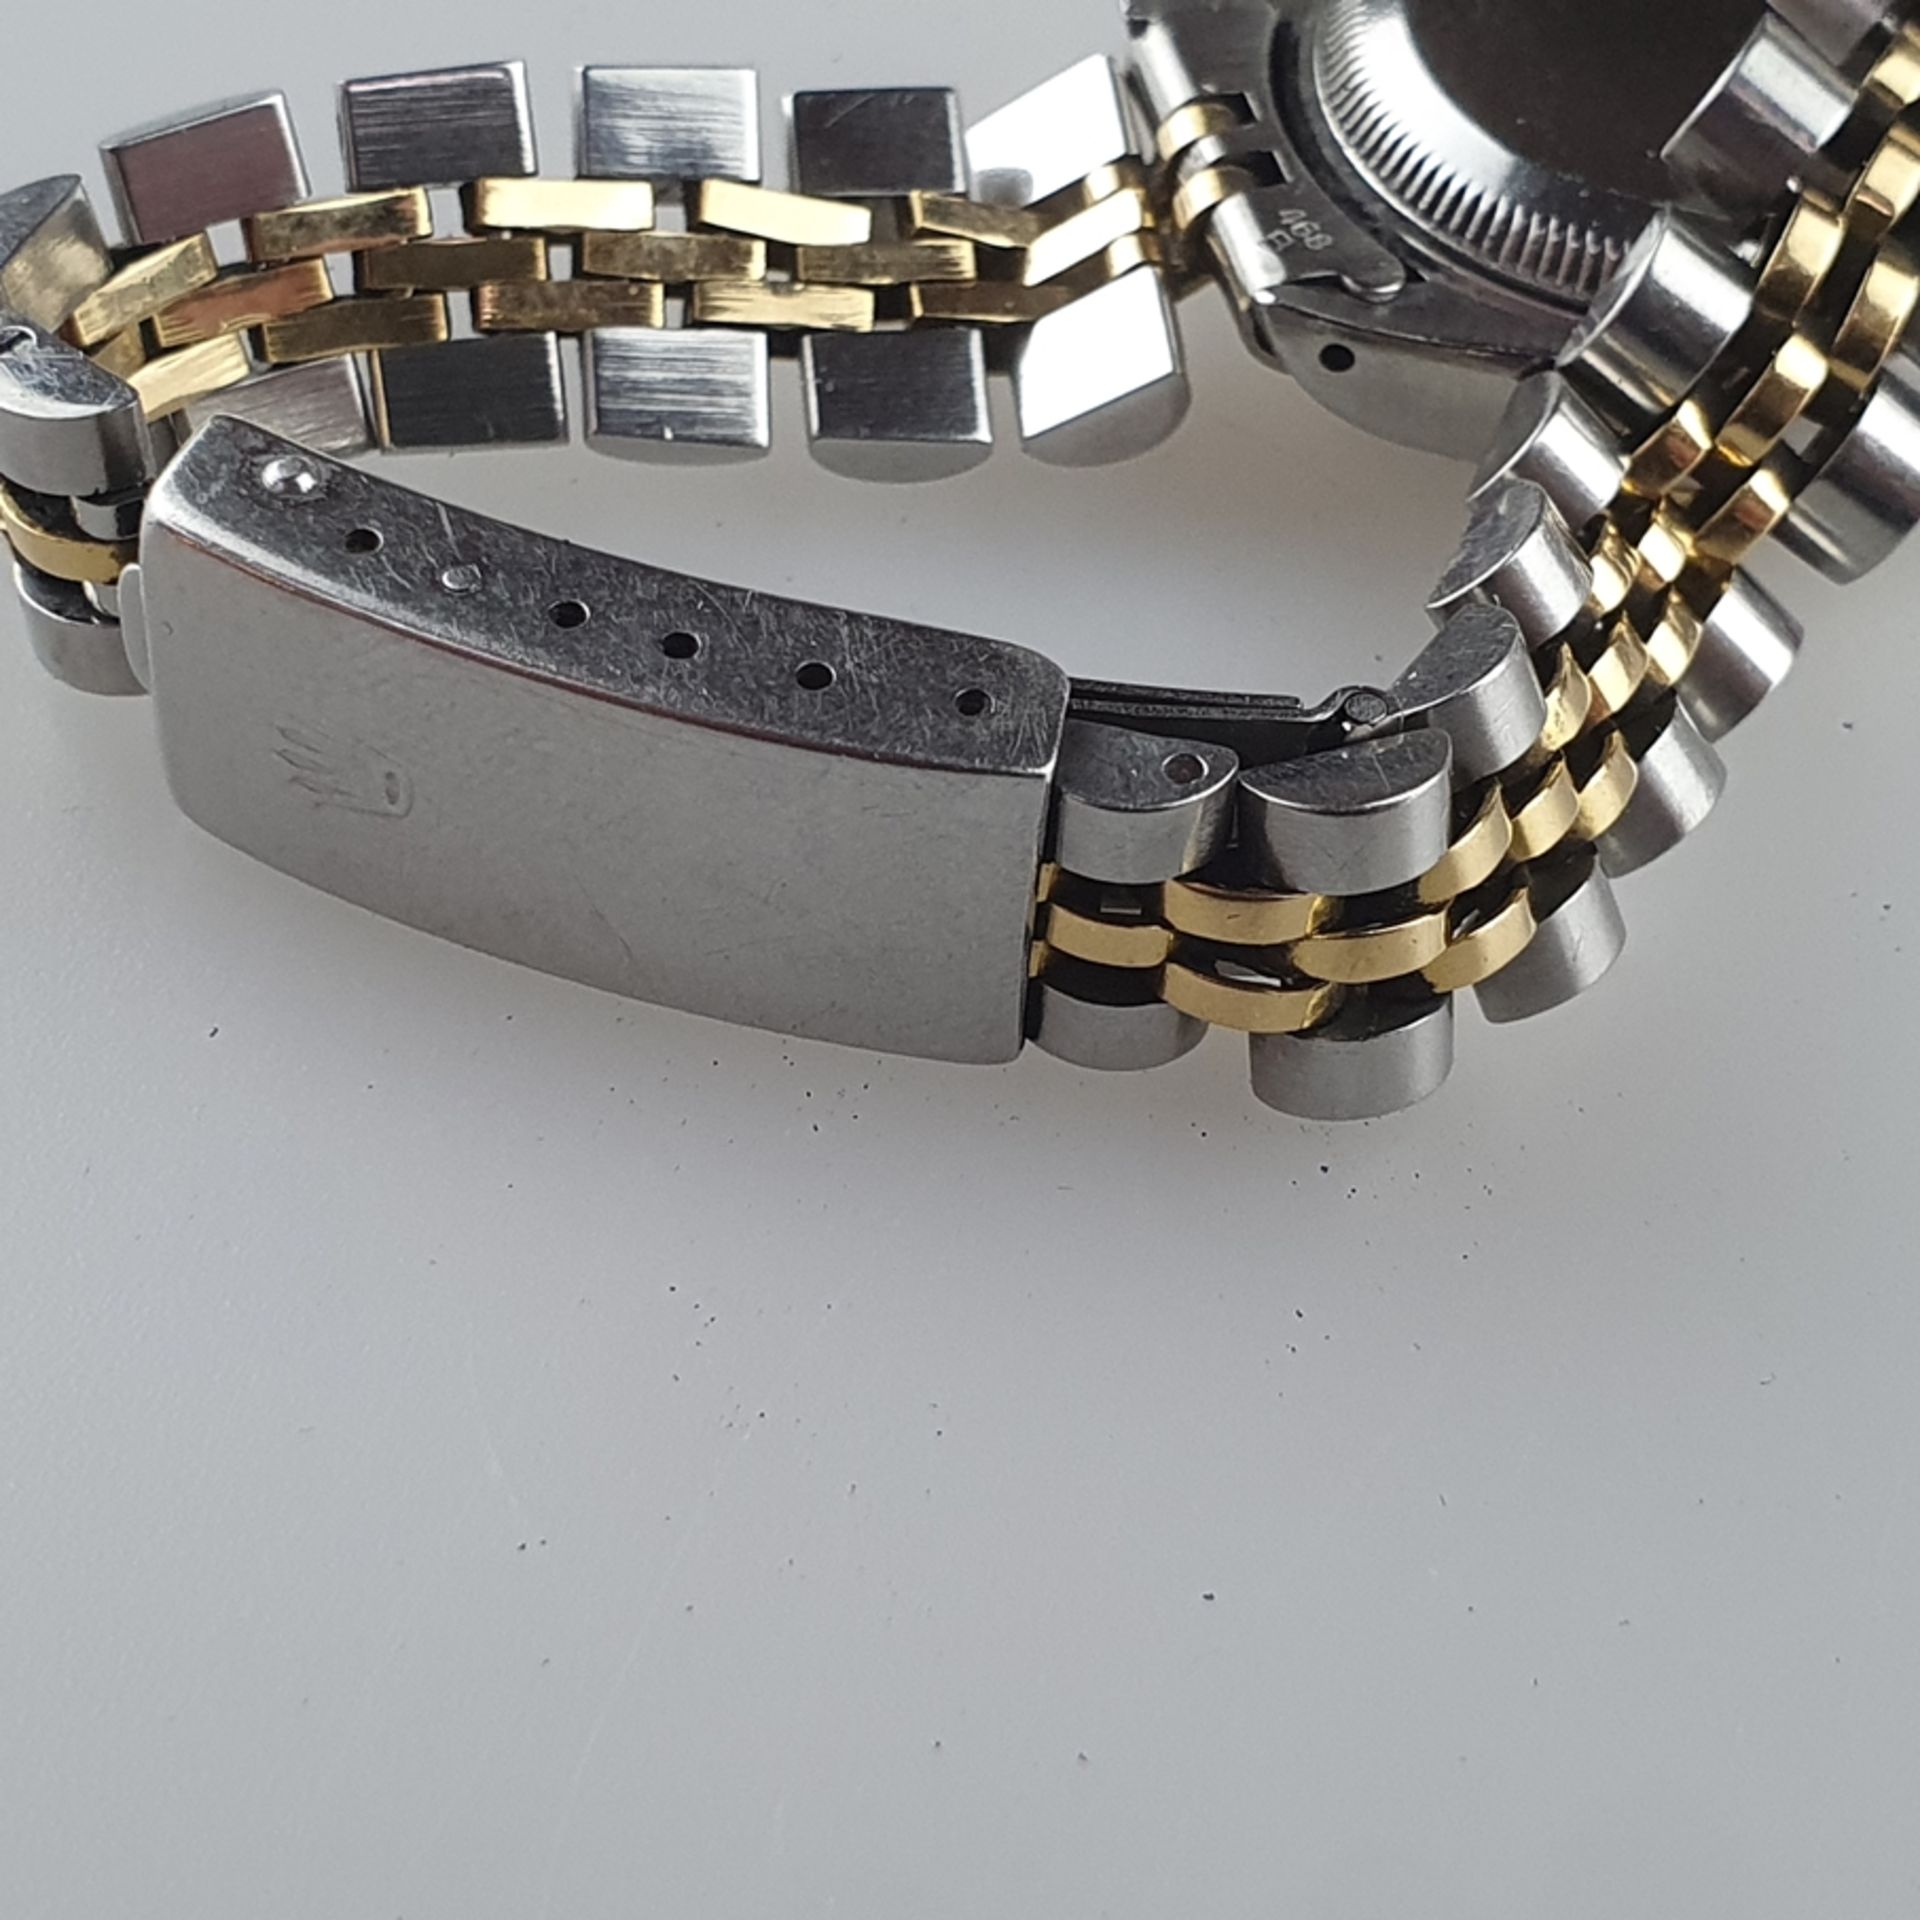 Damenarmbanduhr - Rolex Oyster Perpetual Datejust, Referenznummer 69173, Gehäuse in Edelstahl & Gol - Bild 4 aus 11